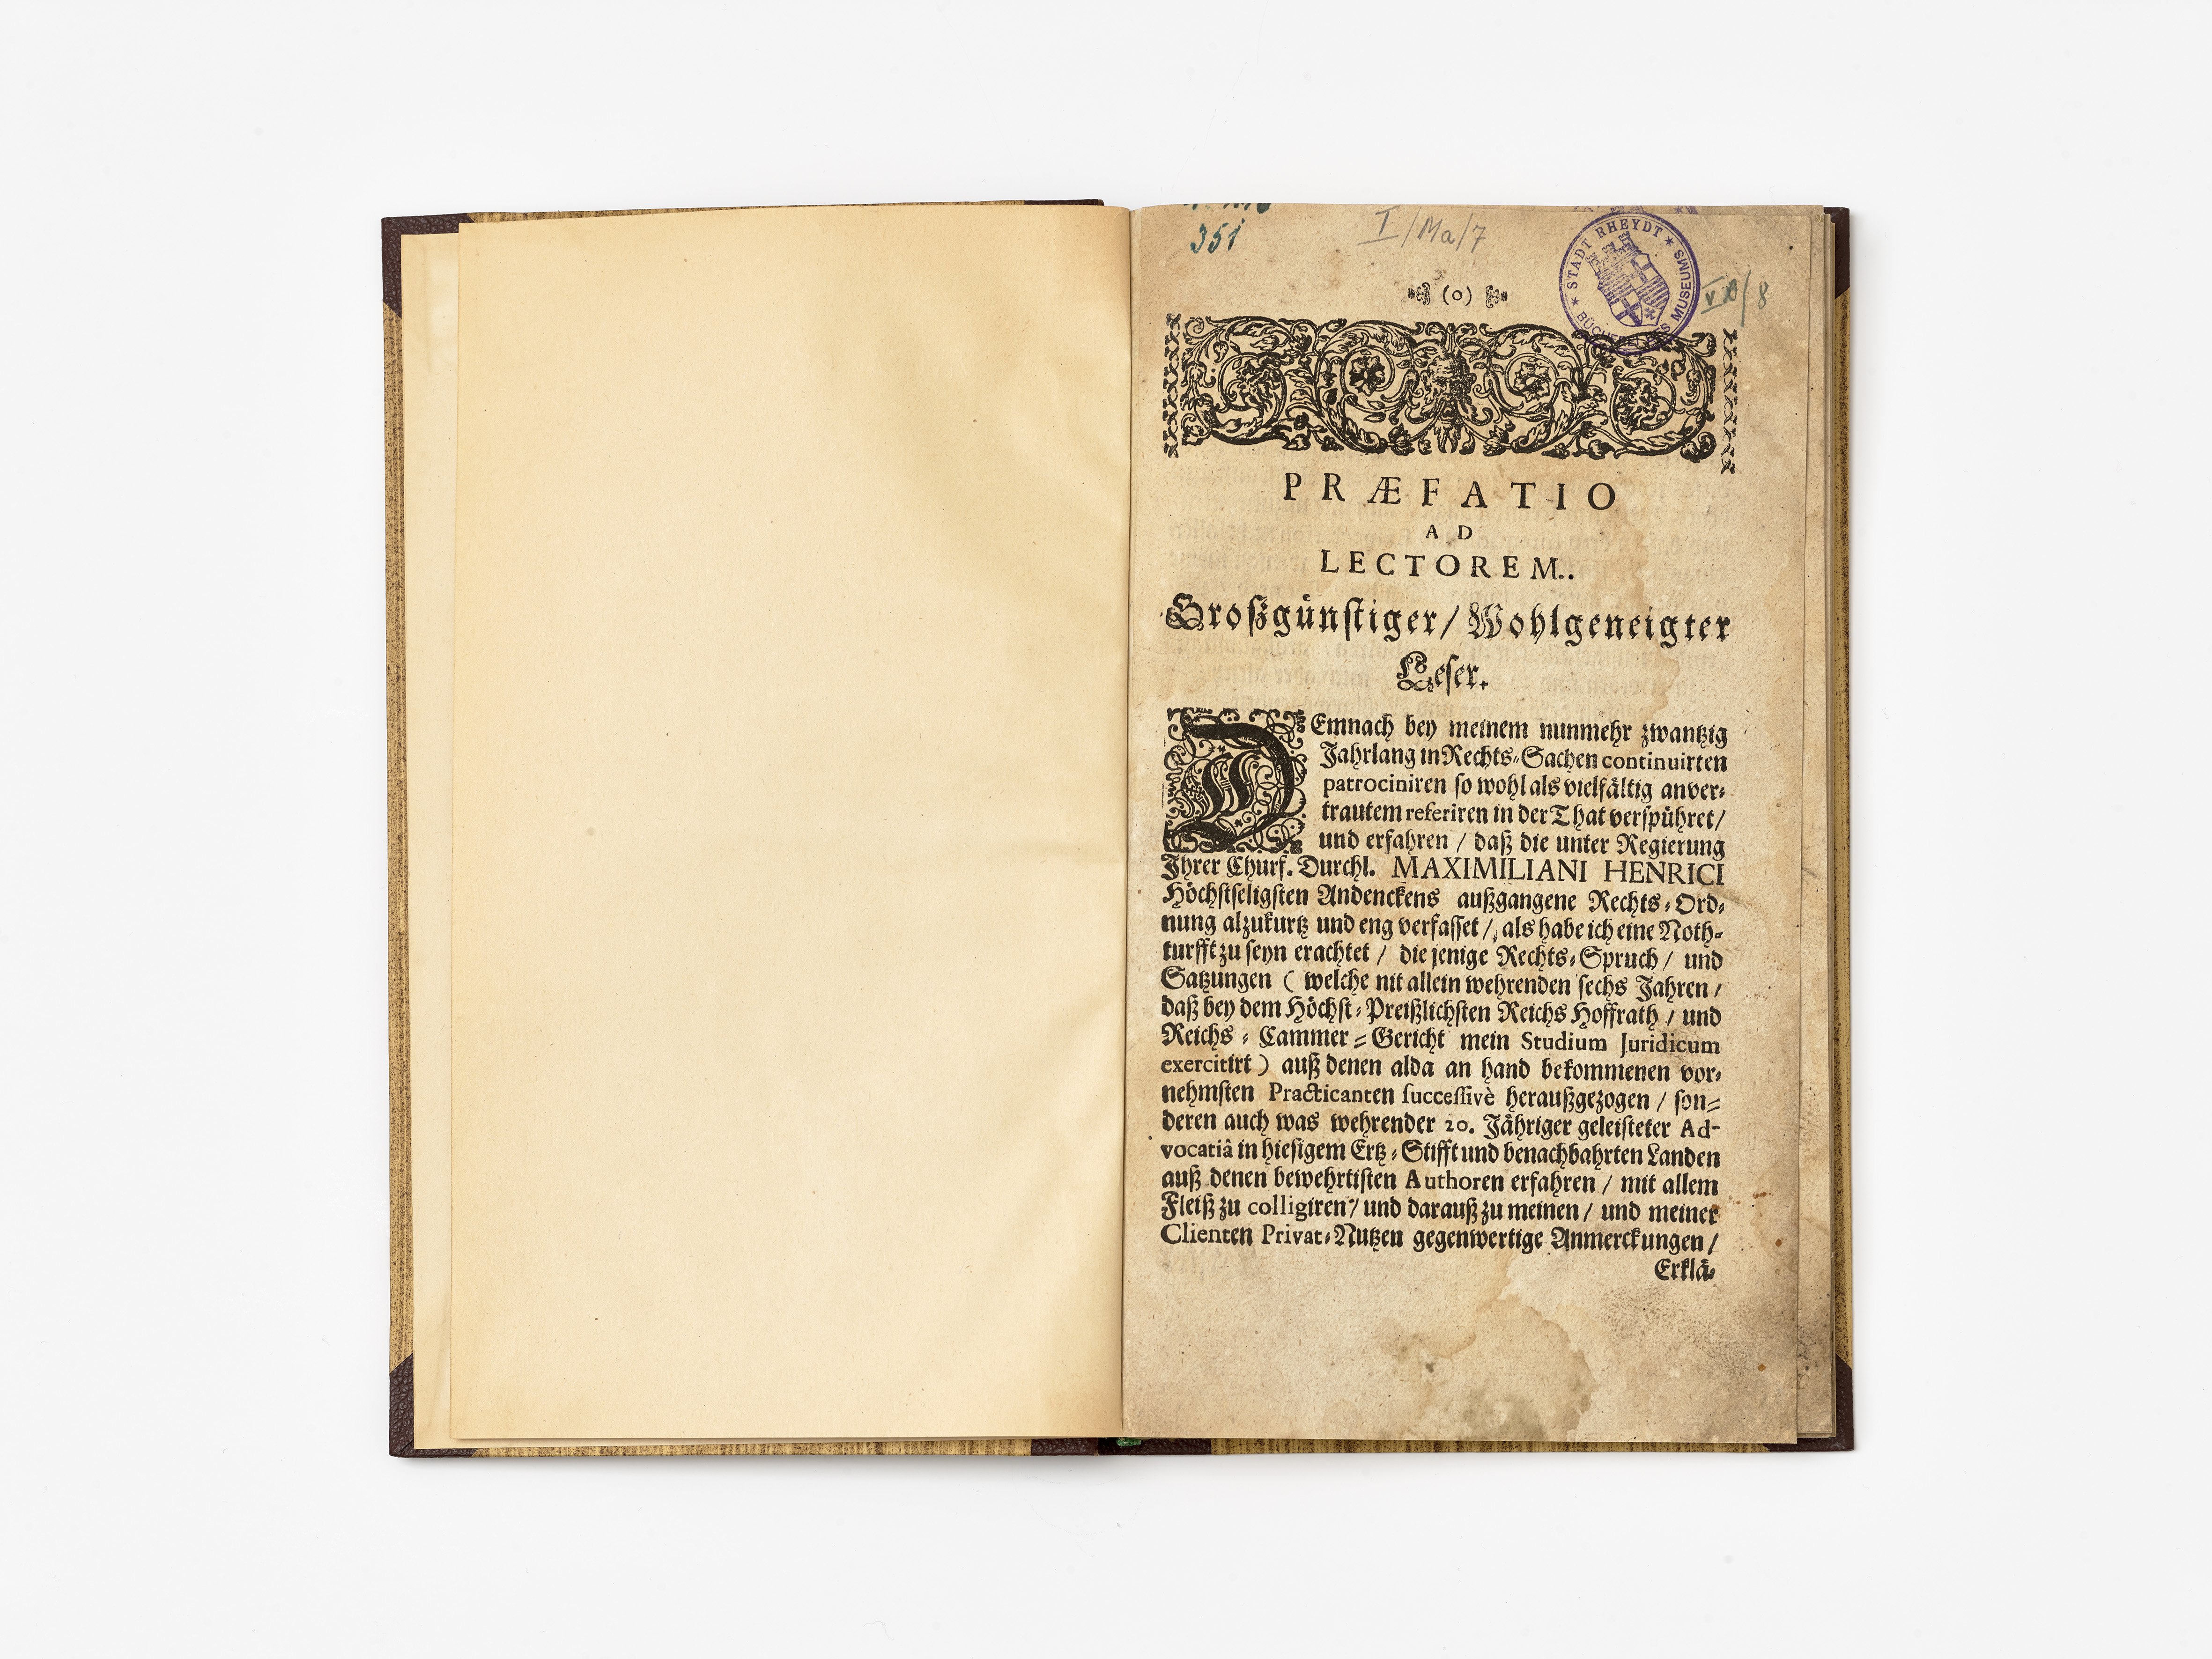 Juristische Schrift zu Erbschaftsangelegenheiten, 18. Jahrhundert (Städtisches Museum Schloss Rheydt CC BY)